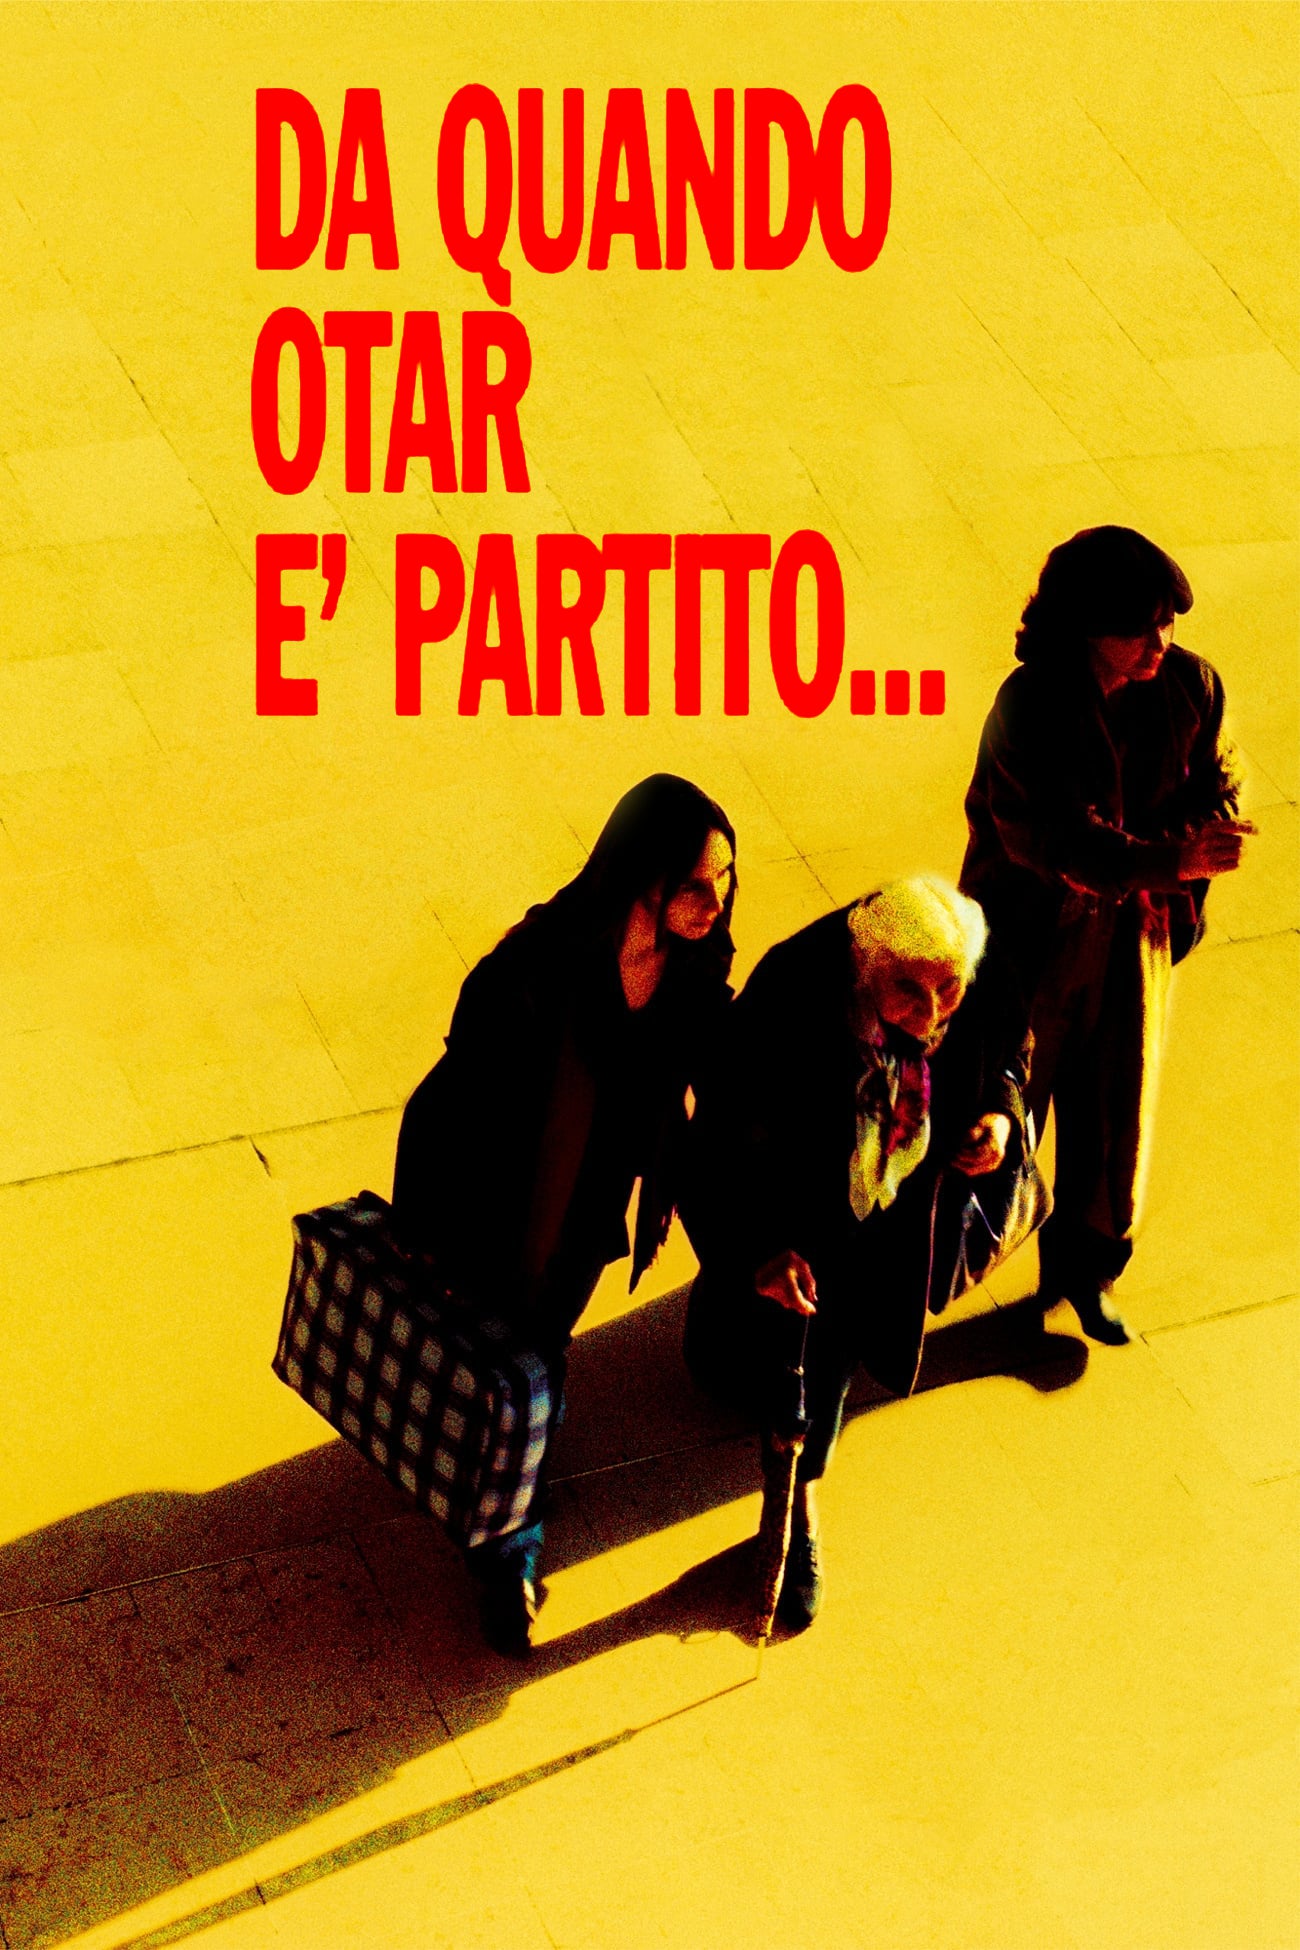 Da quando Otar è partito… (2003)